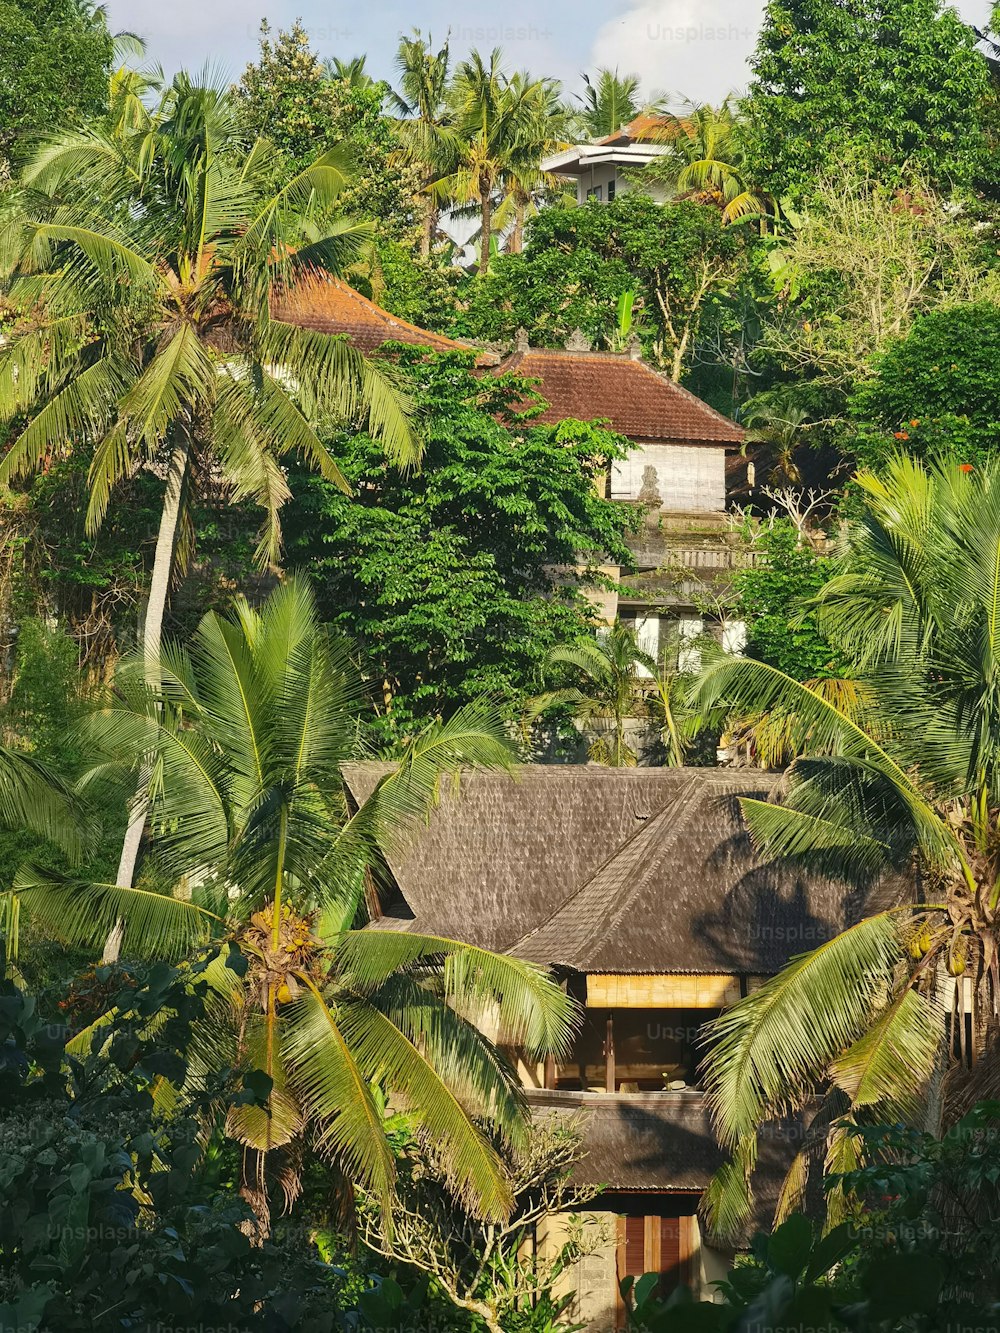 Uma encosta verde-esmeralda, exuberante com árvores e abundantes folhas de palmeira, aproveitando a luz quente do sol.